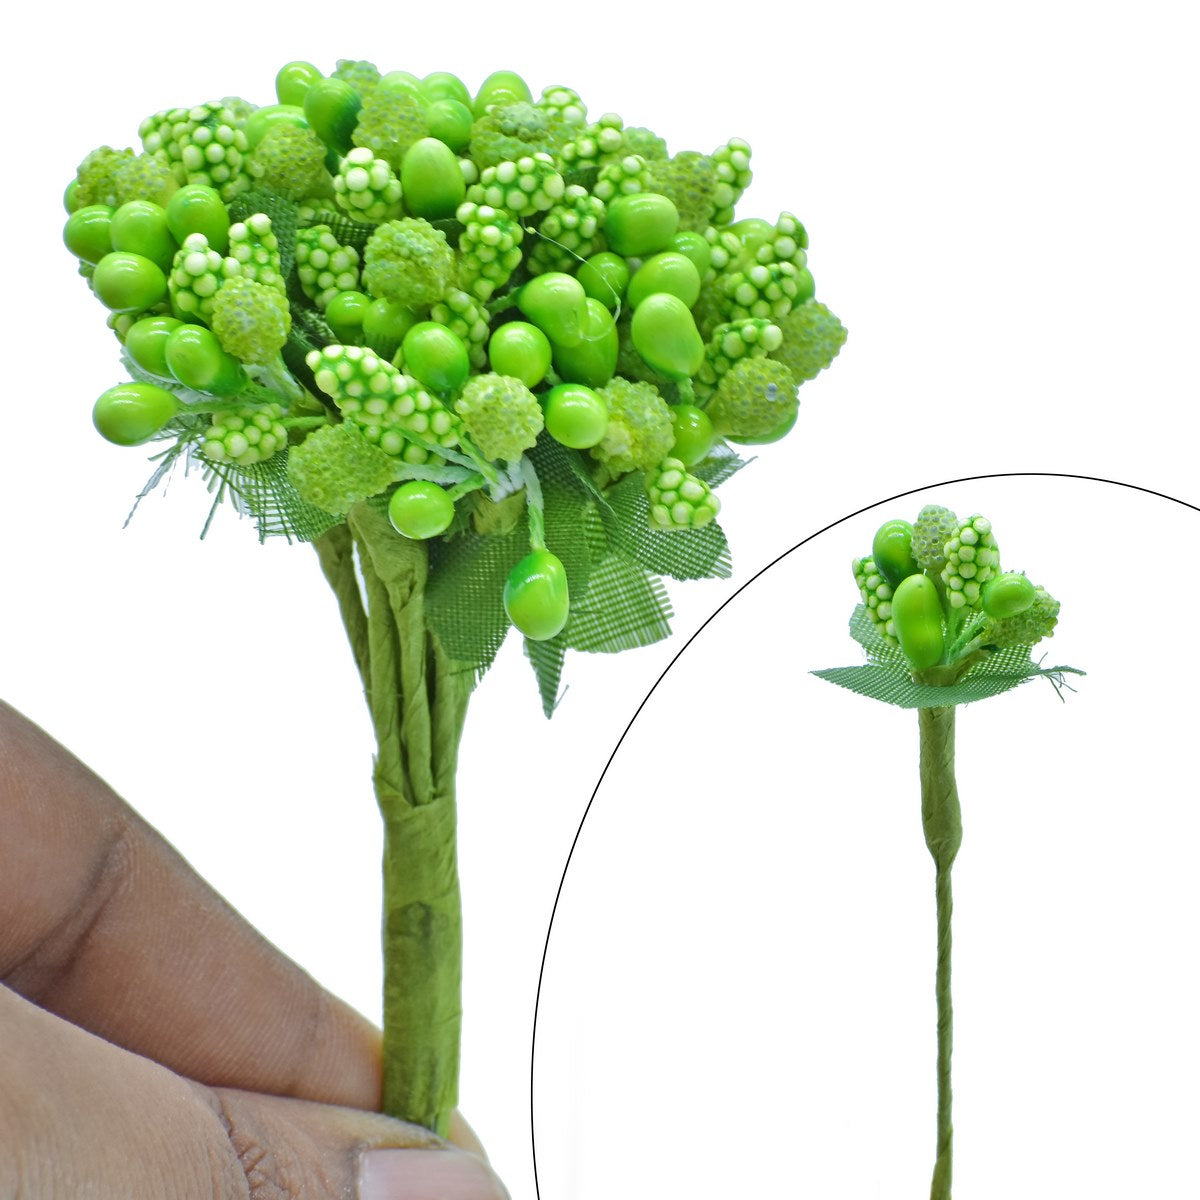 jags-mumbai Artificial Flower Artificial Flower Pollens 144 Pics Green